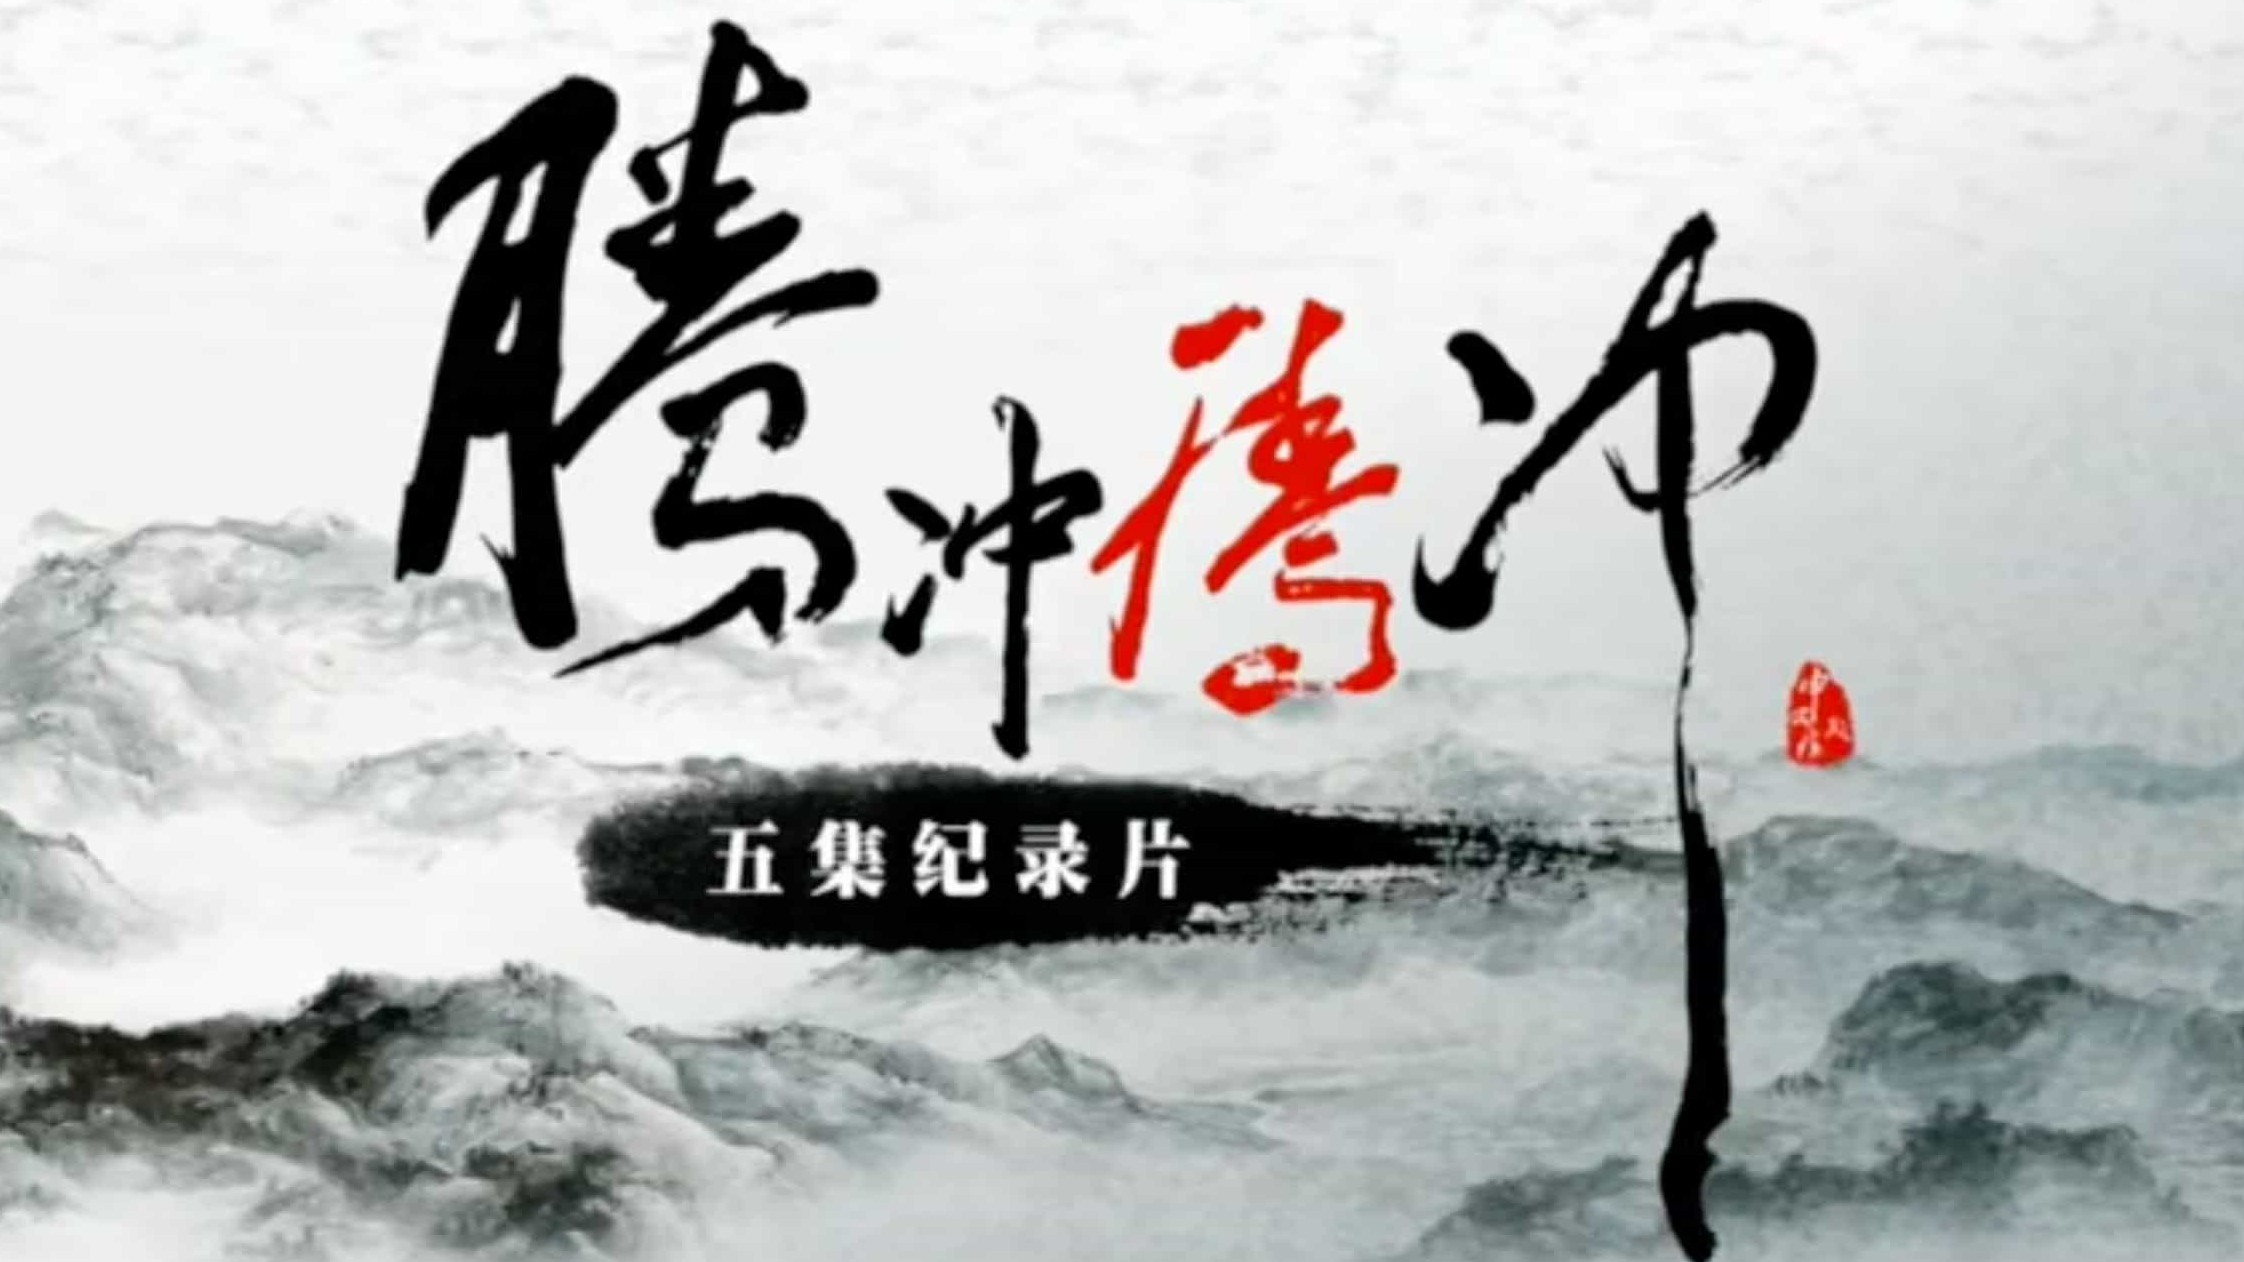 纪录片《腾冲 腾冲 2015》全5集 汉语中字 720p